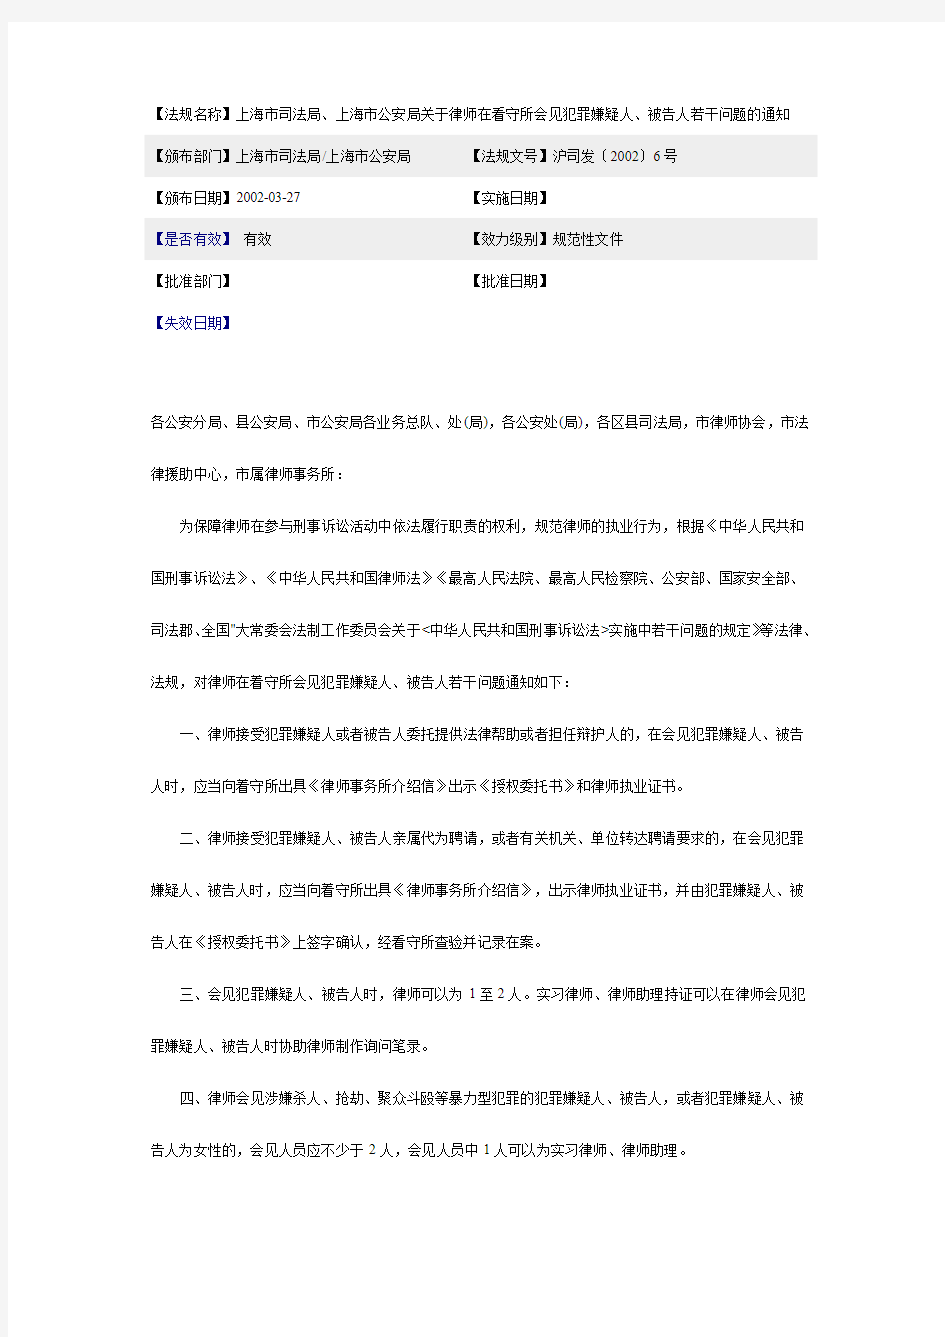 上海市司法局、上海市公安局关于律师在看守所会见犯罪嫌疑人、被告人若干问题的通知